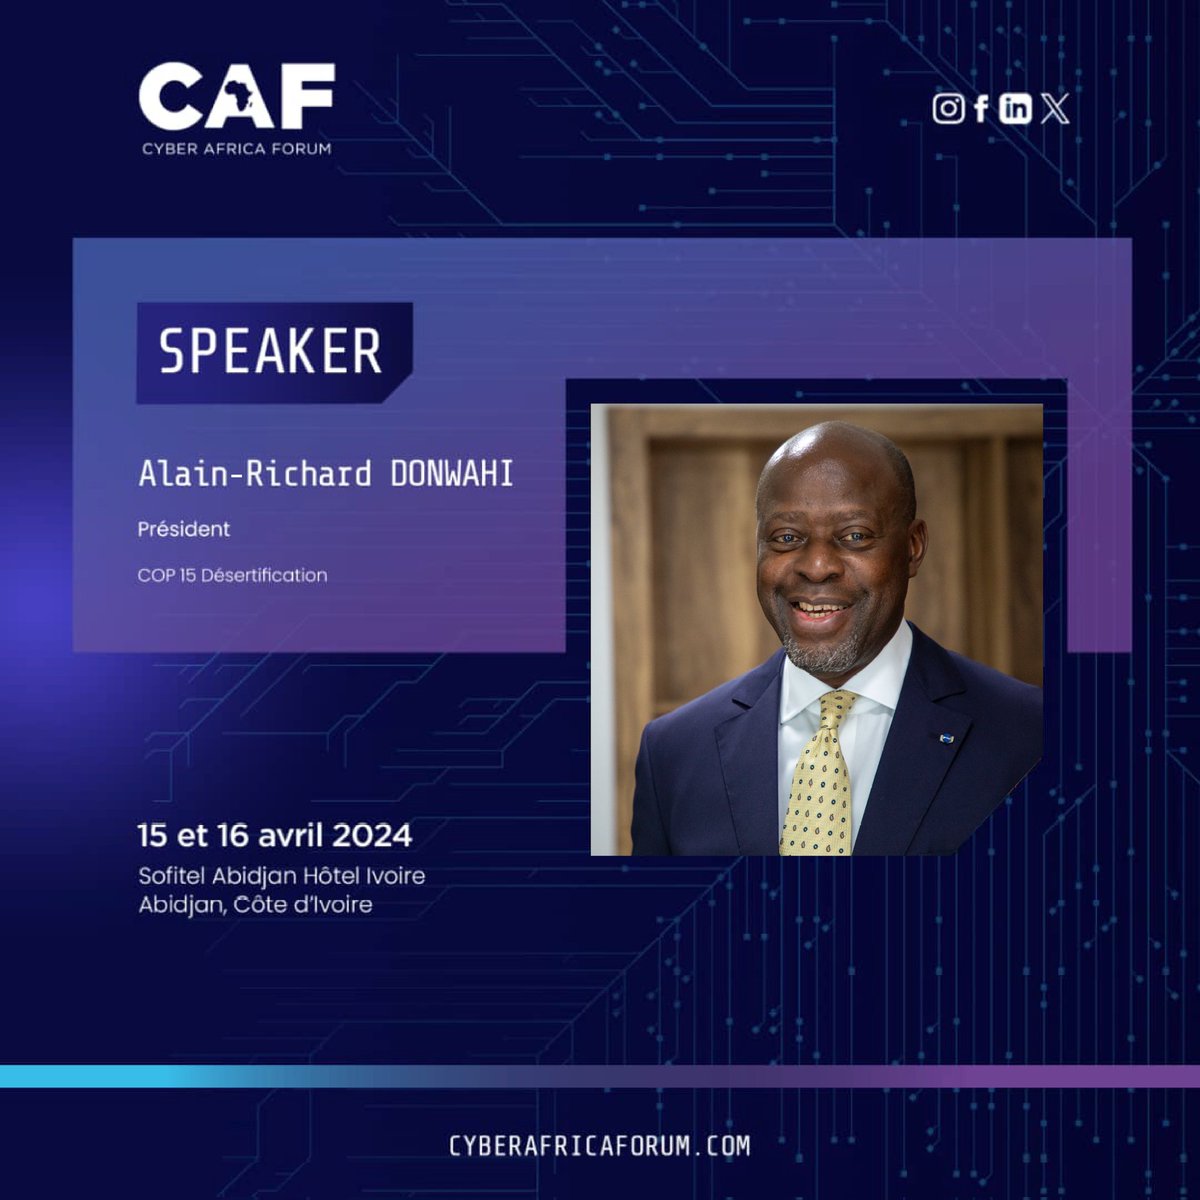 À très bientôt pour le Cyber Africa Forum. 
@Gouvci @SpallianFr @UNCCD @agro_map @FoxtrotLdc @betterSoil_ @COP28_UAE @CBD_COP15 @CAF_forum